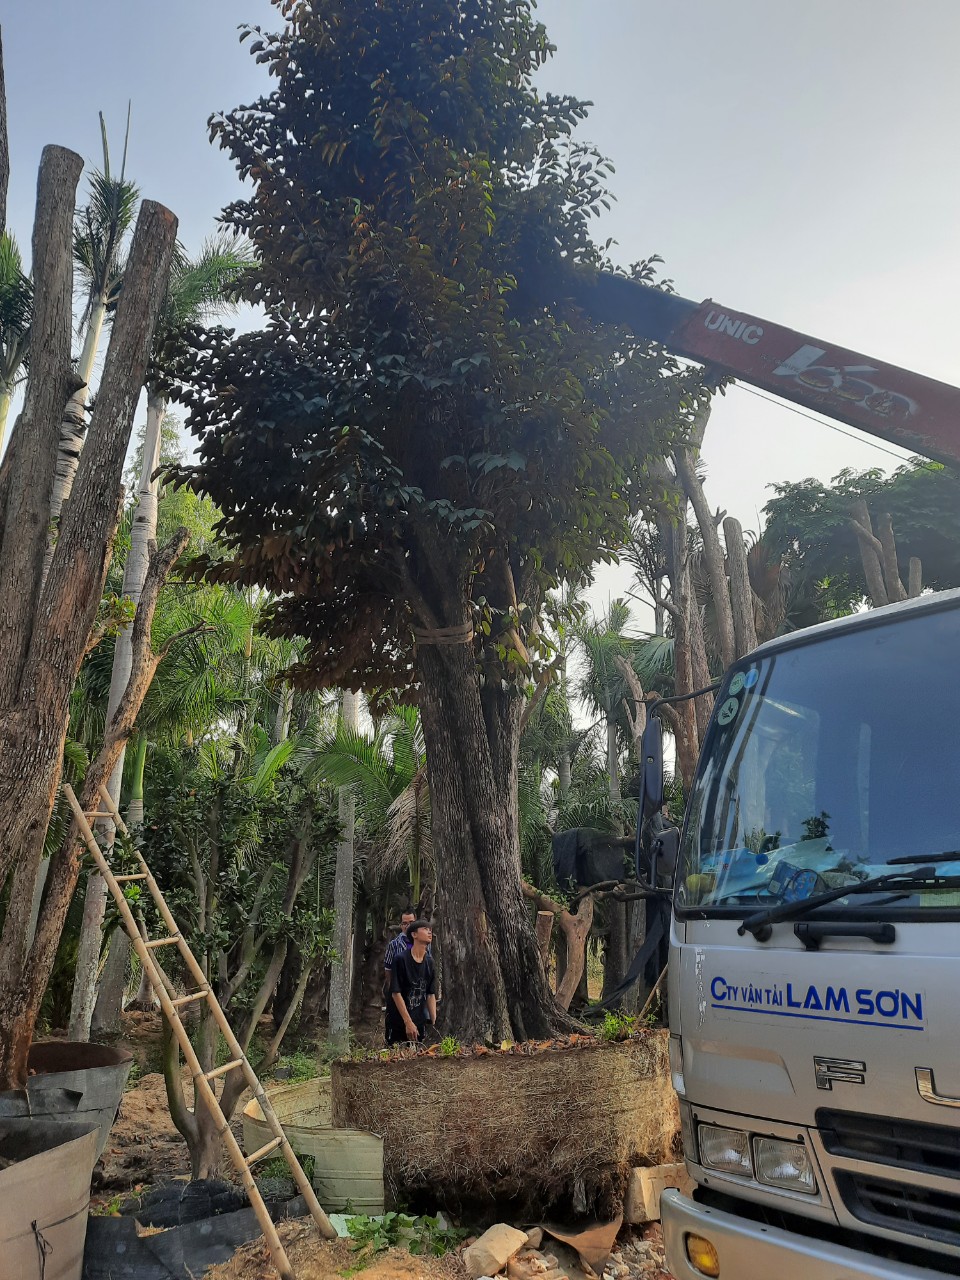 Lí do bạn nên sử dụng các dịch vụ tại An Khang – đơn vị trổng cây xanh tại Thuận An Bình Dương